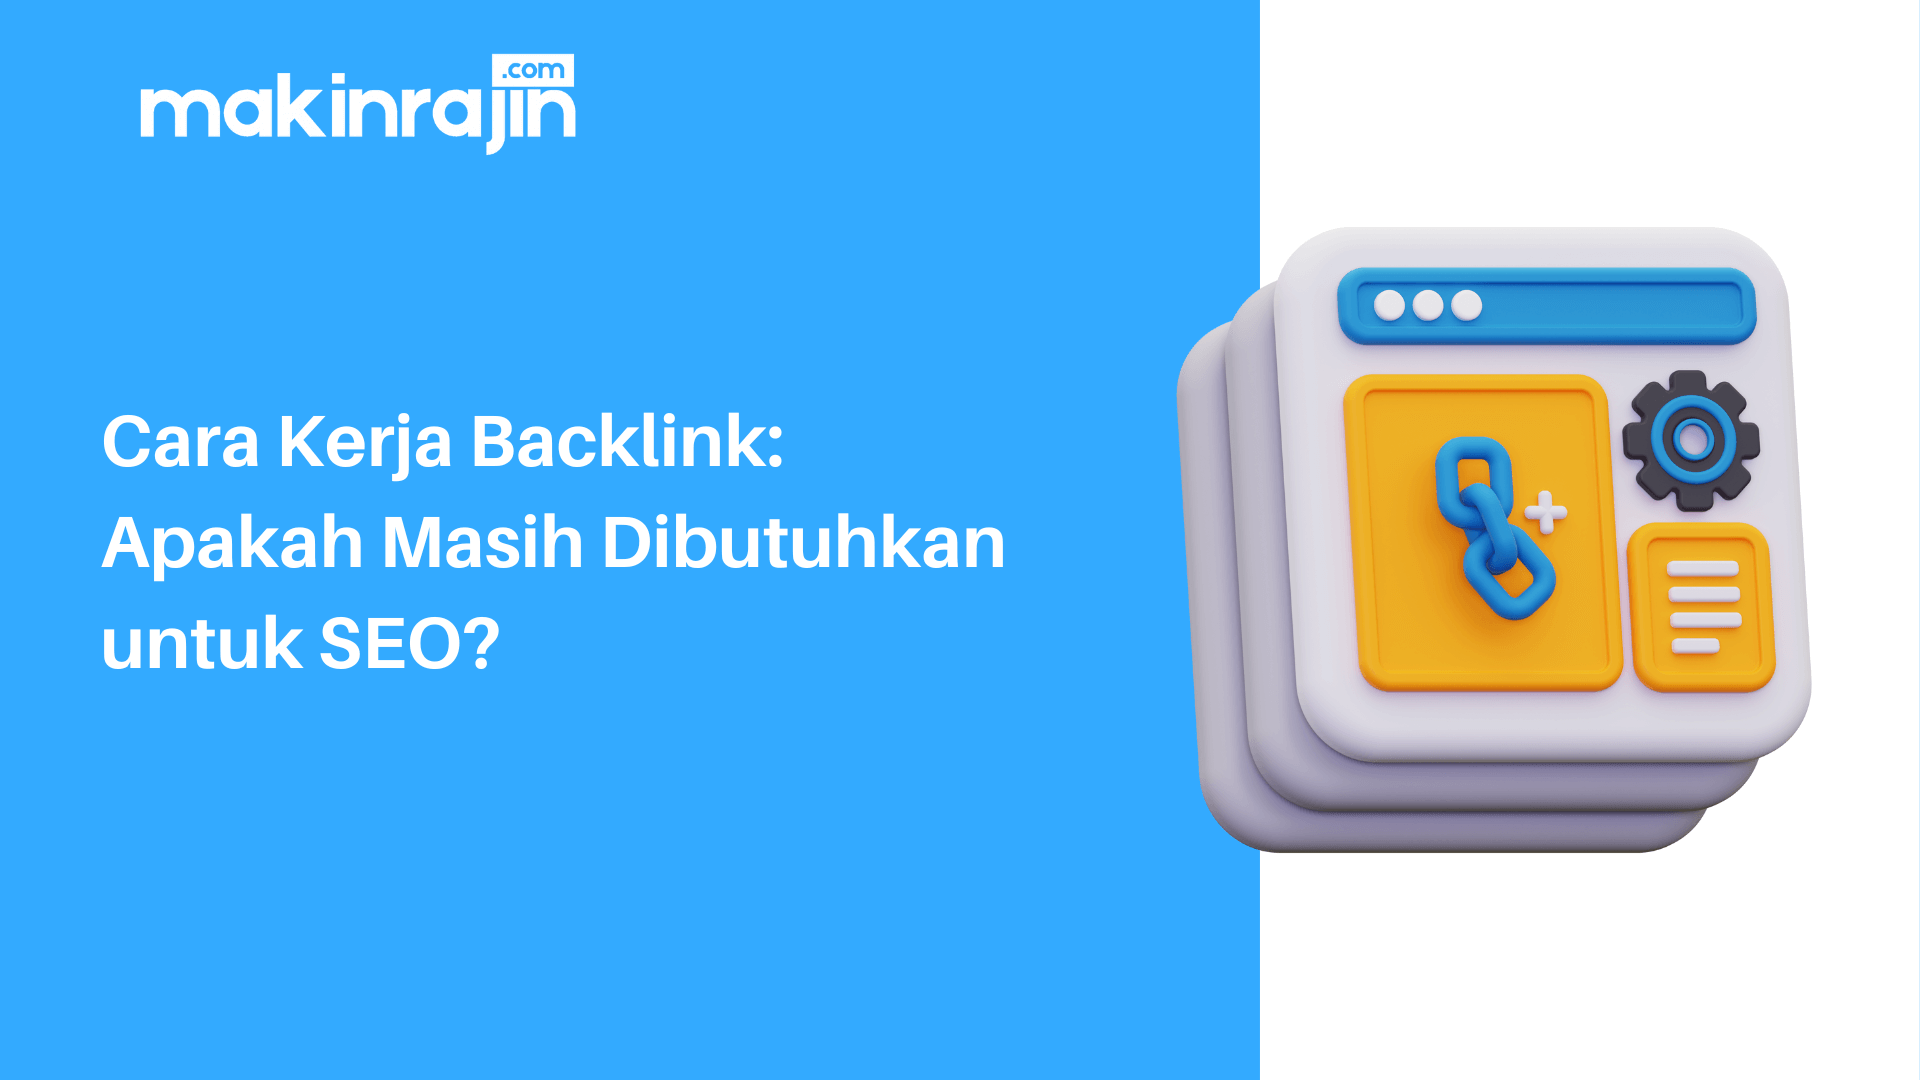 Cara Kerja Backlink: Apakah Masih Dibutuhkan untuk SEO?